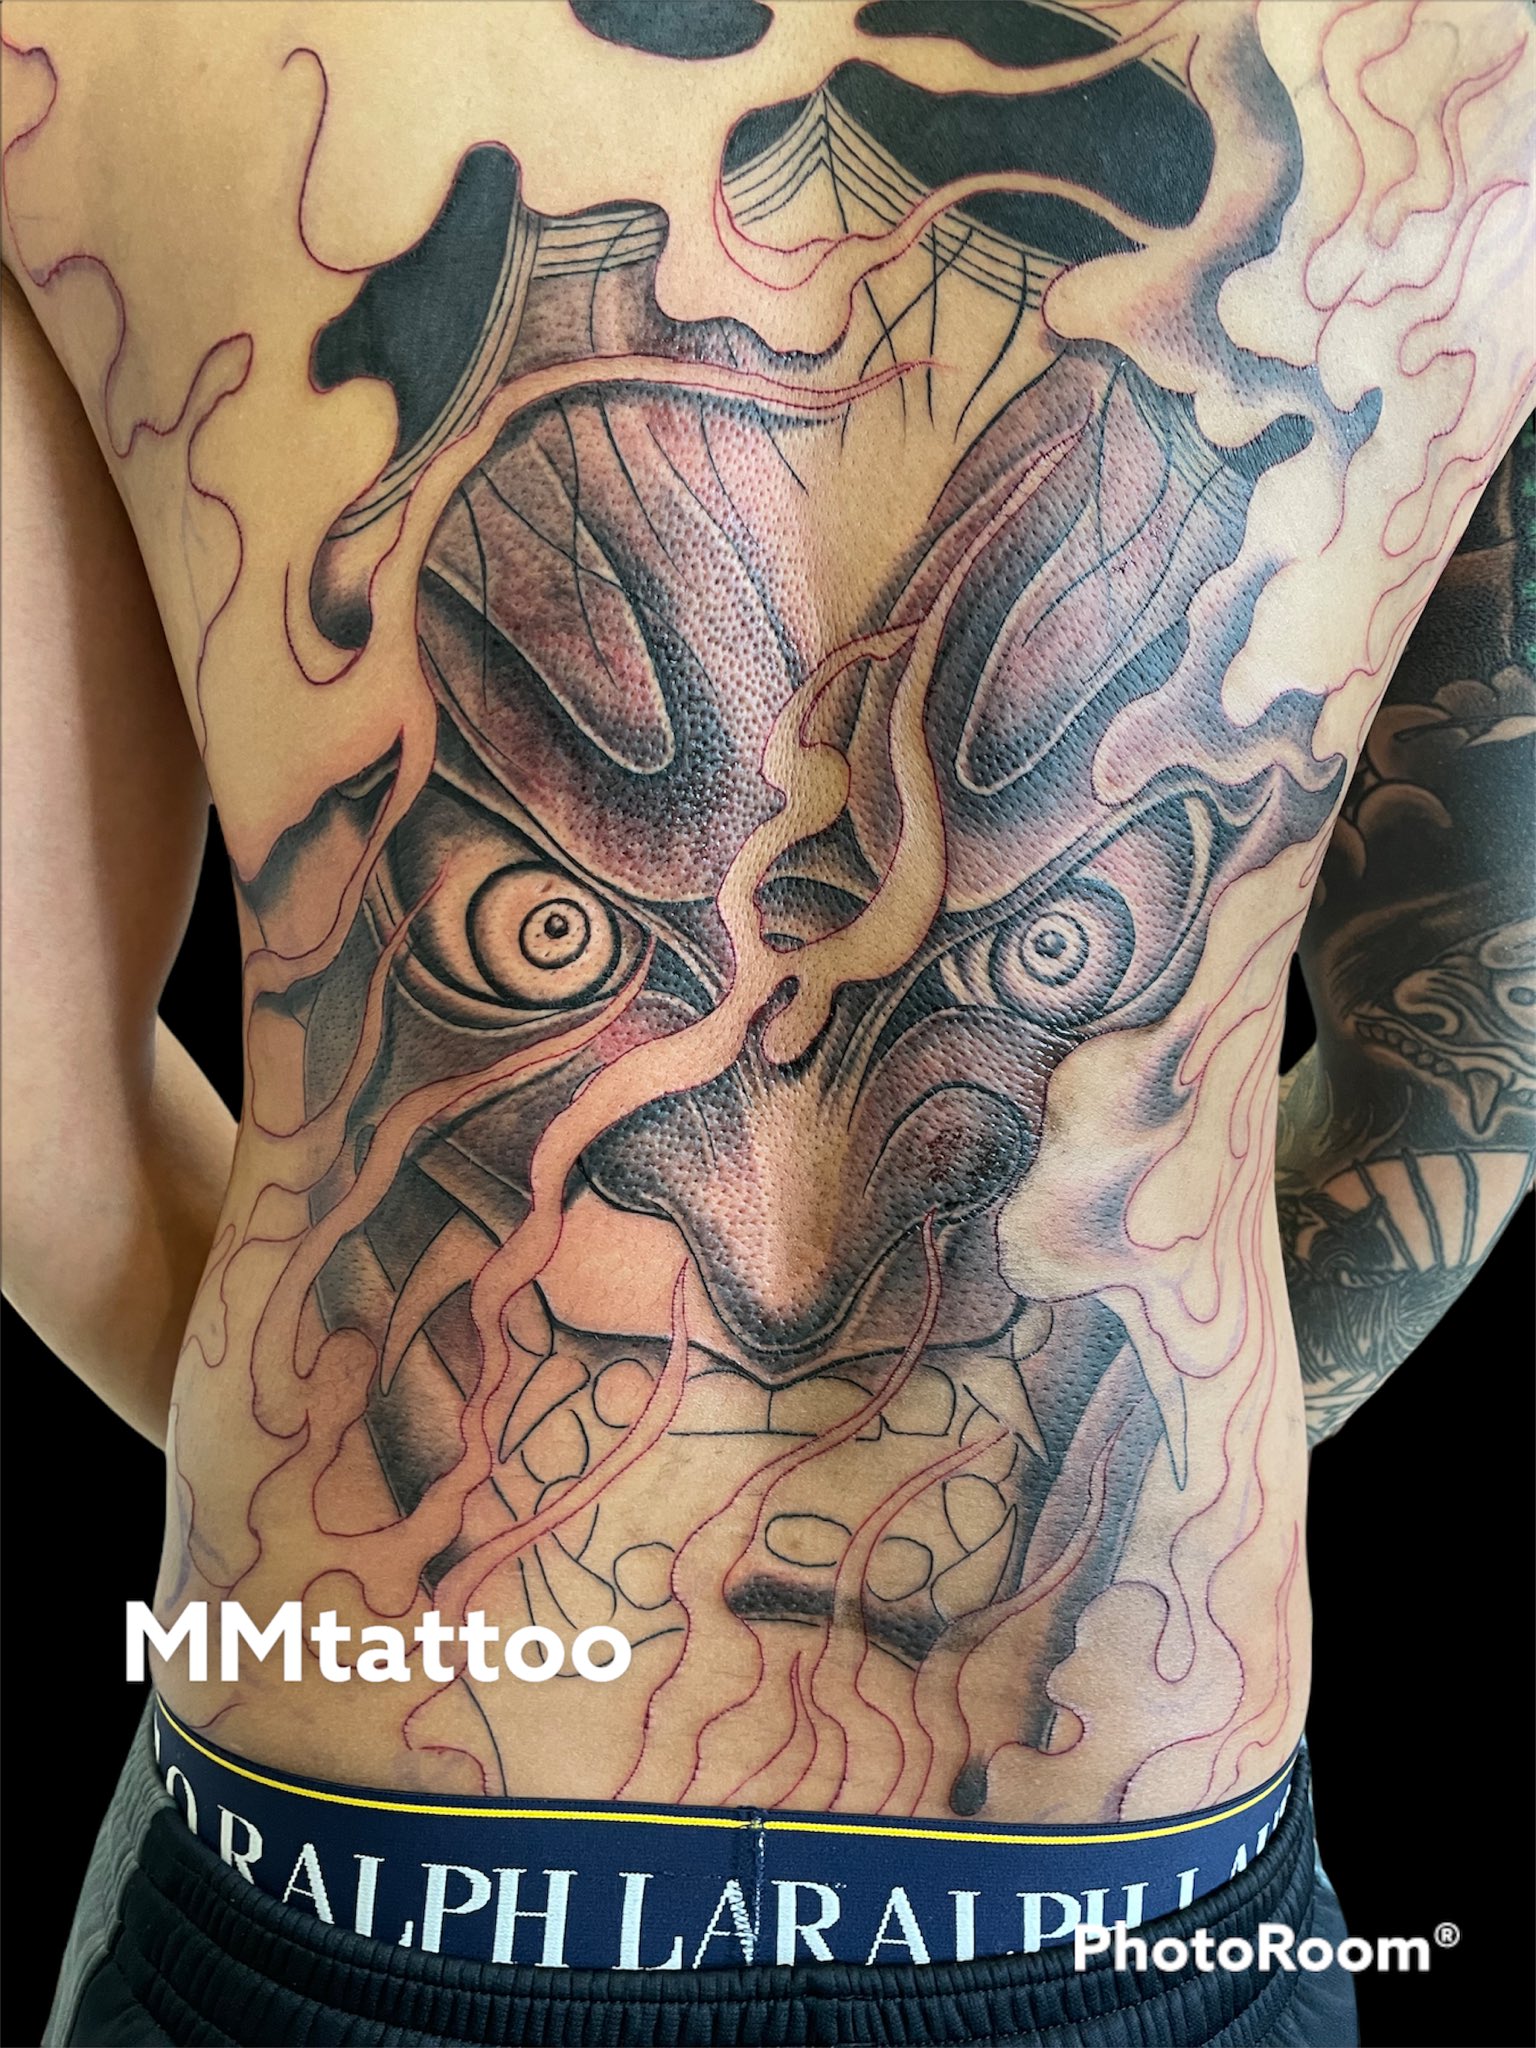 Mm Tattoo Mmtattoo Japan Tattoo 背中 般若 痛い 刺青https T Co U8a1ljqn33 Twitter